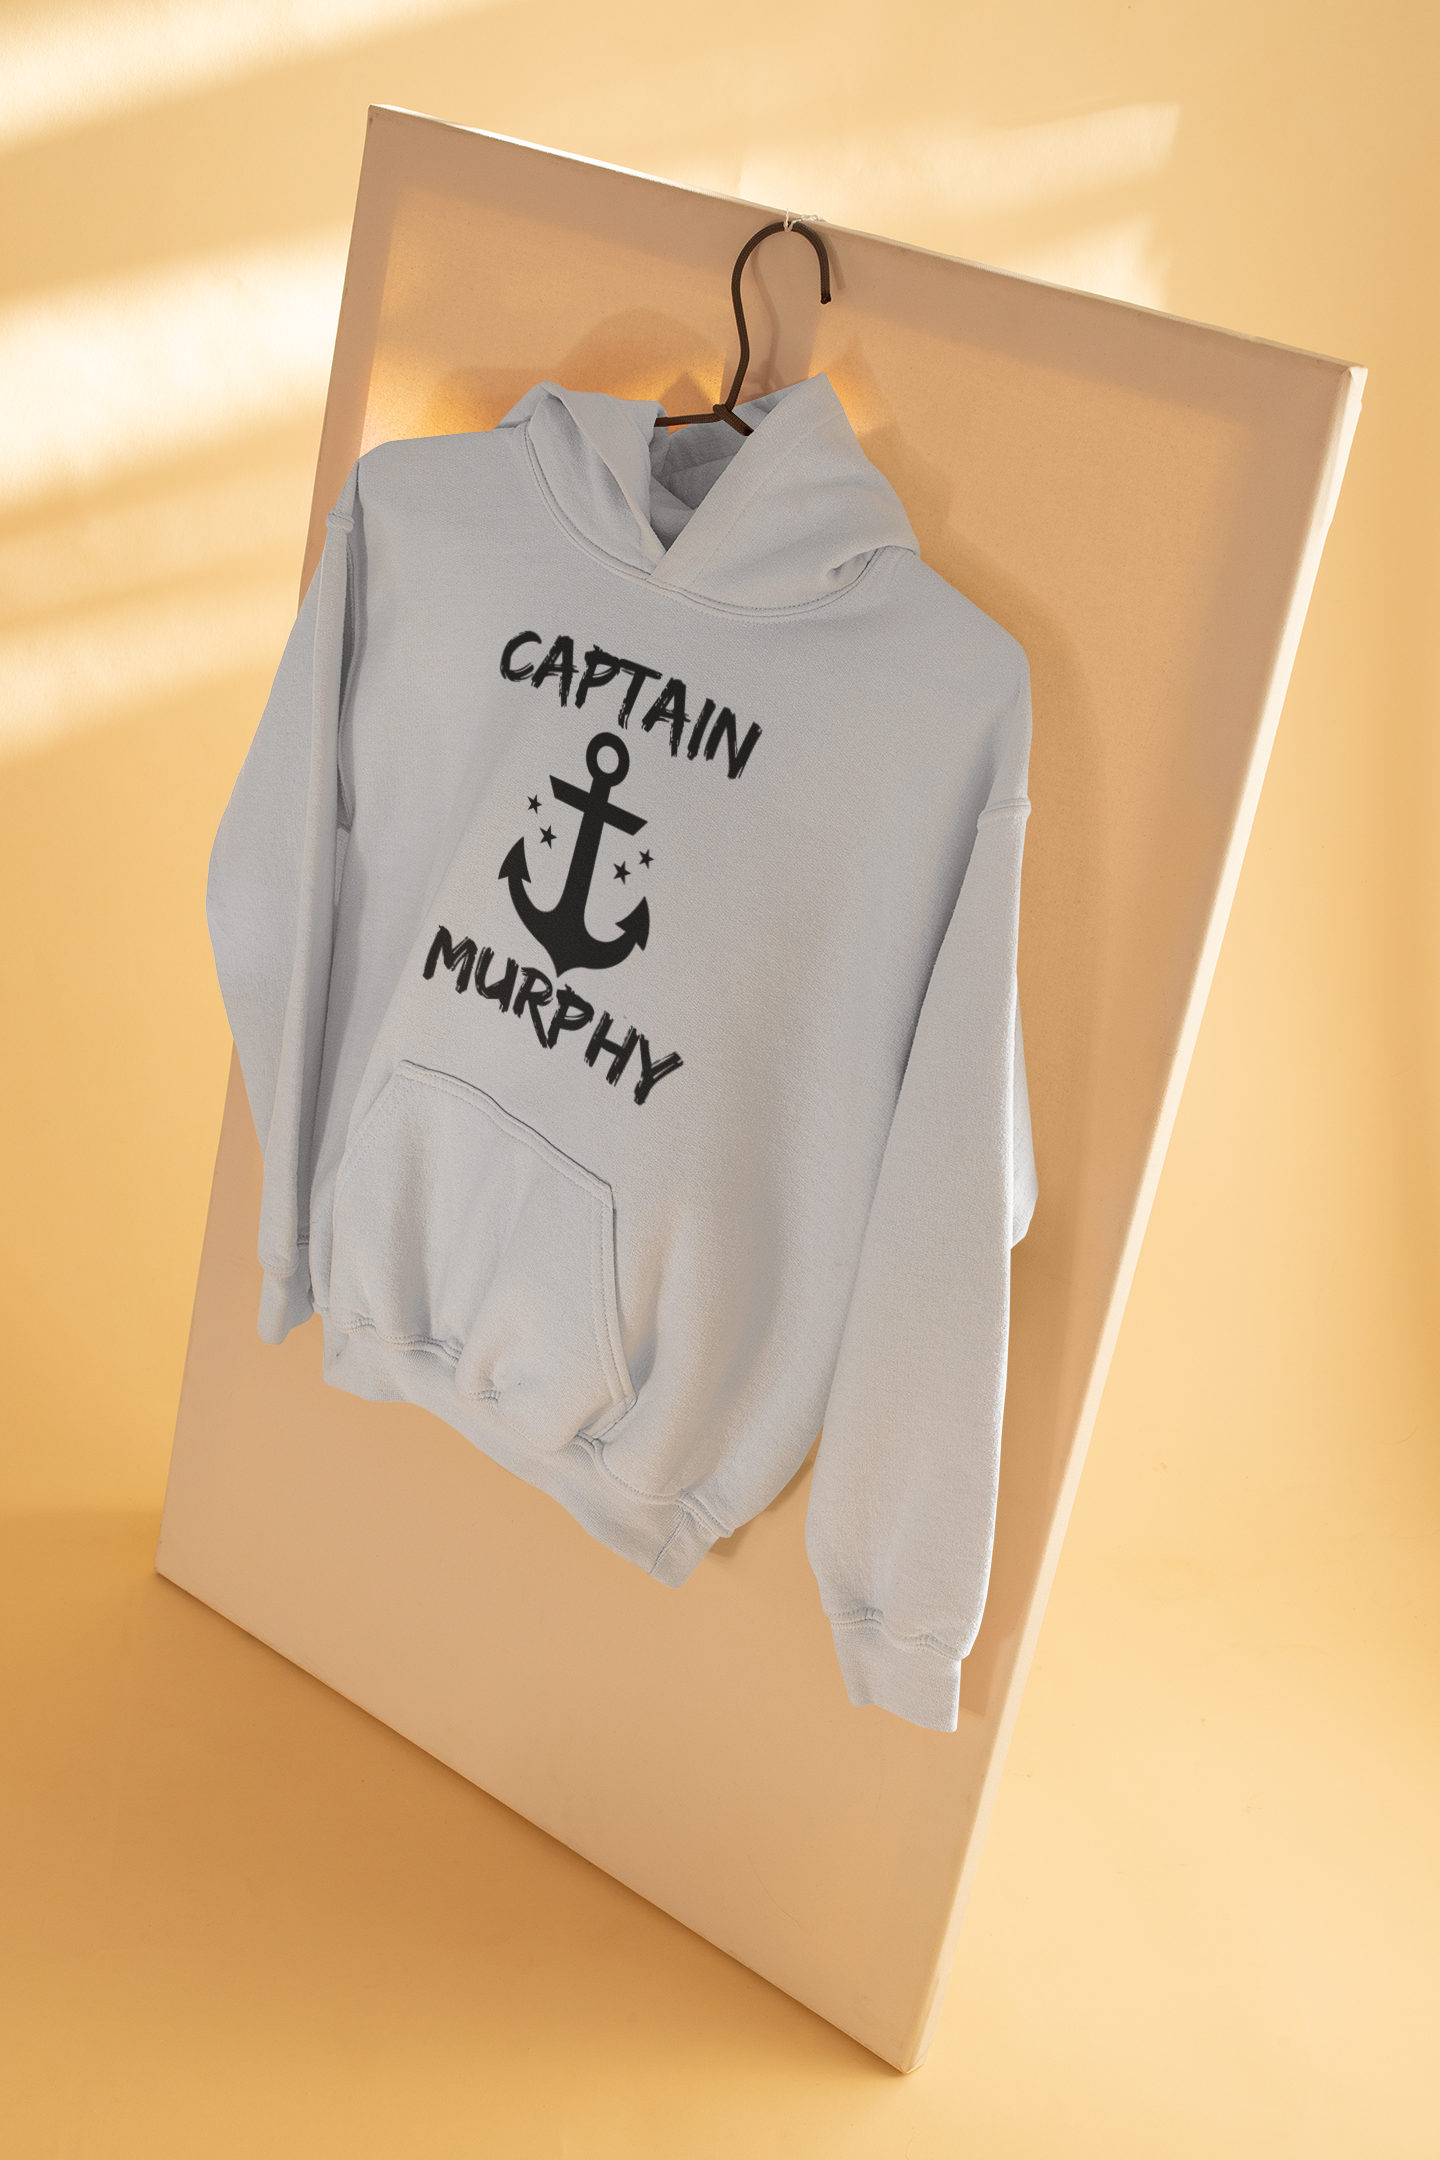 Captain Murphy Merchant Navy Men Hoodies-FunkyTeesClub